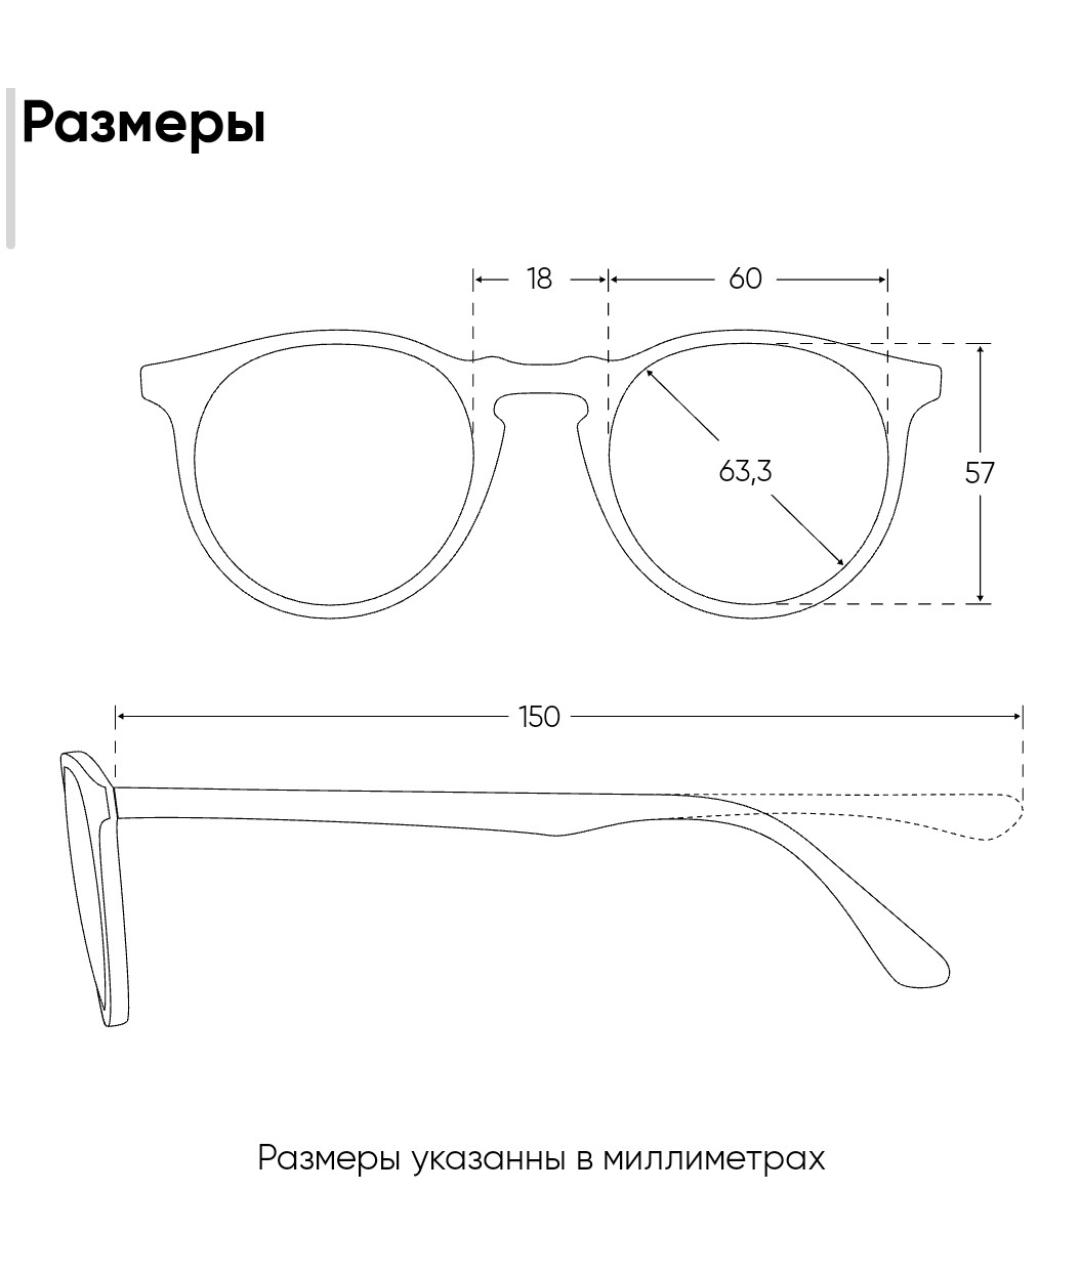 ISABEL MARANT Серые металлические солнцезащитные очки, фото 6